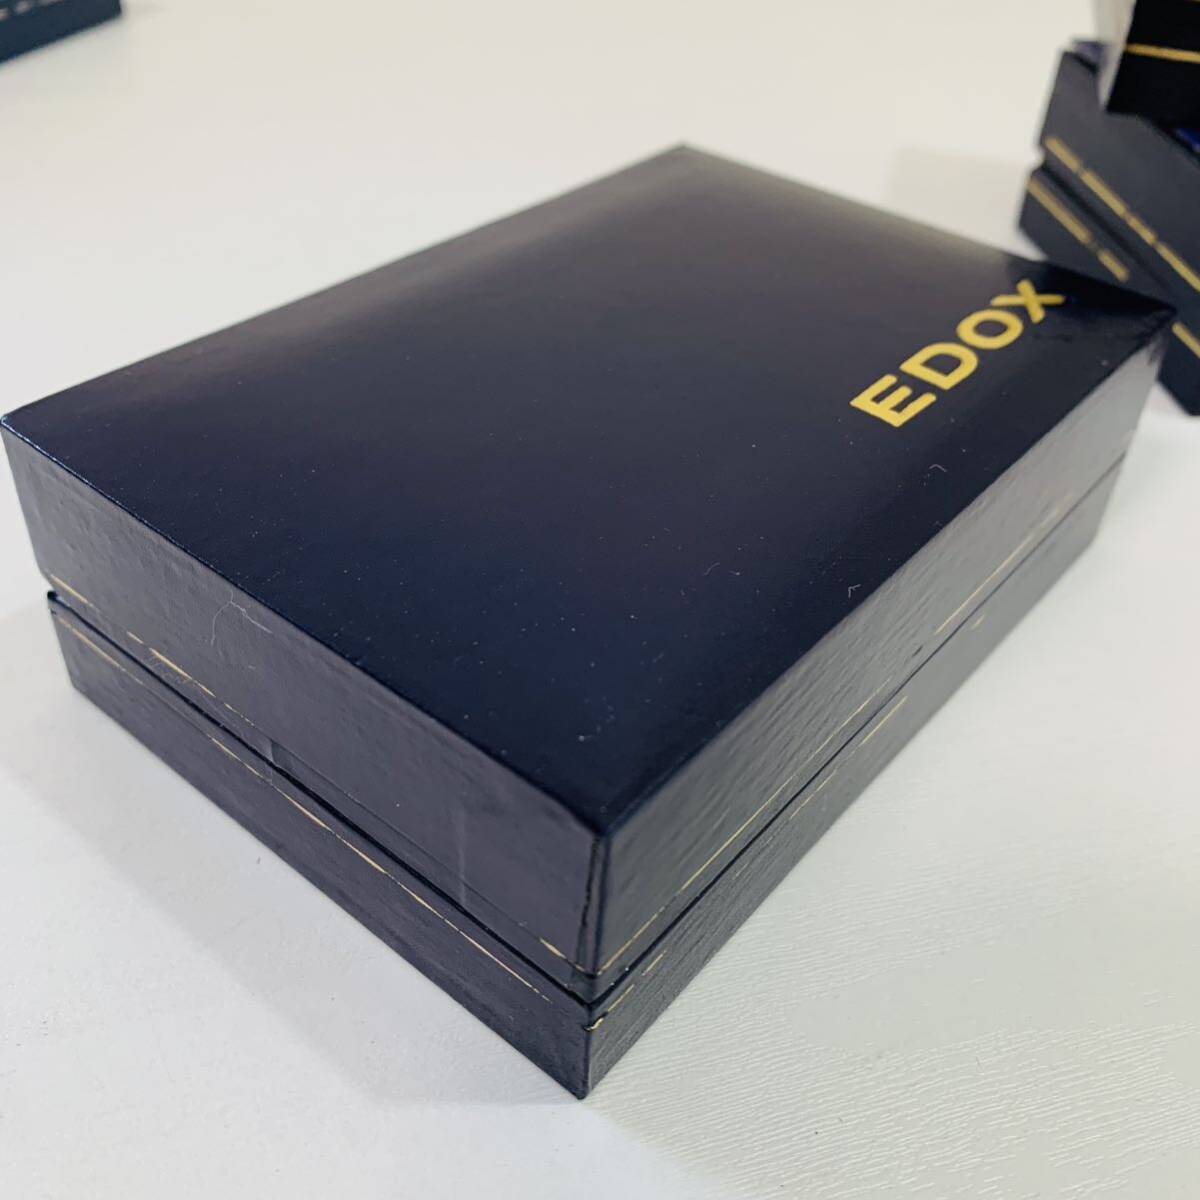 EDOX Ed ks Швейцария наручные часы box кейс пустой коробка часы кейс 7 шт. комплект 4 вид не использовался 